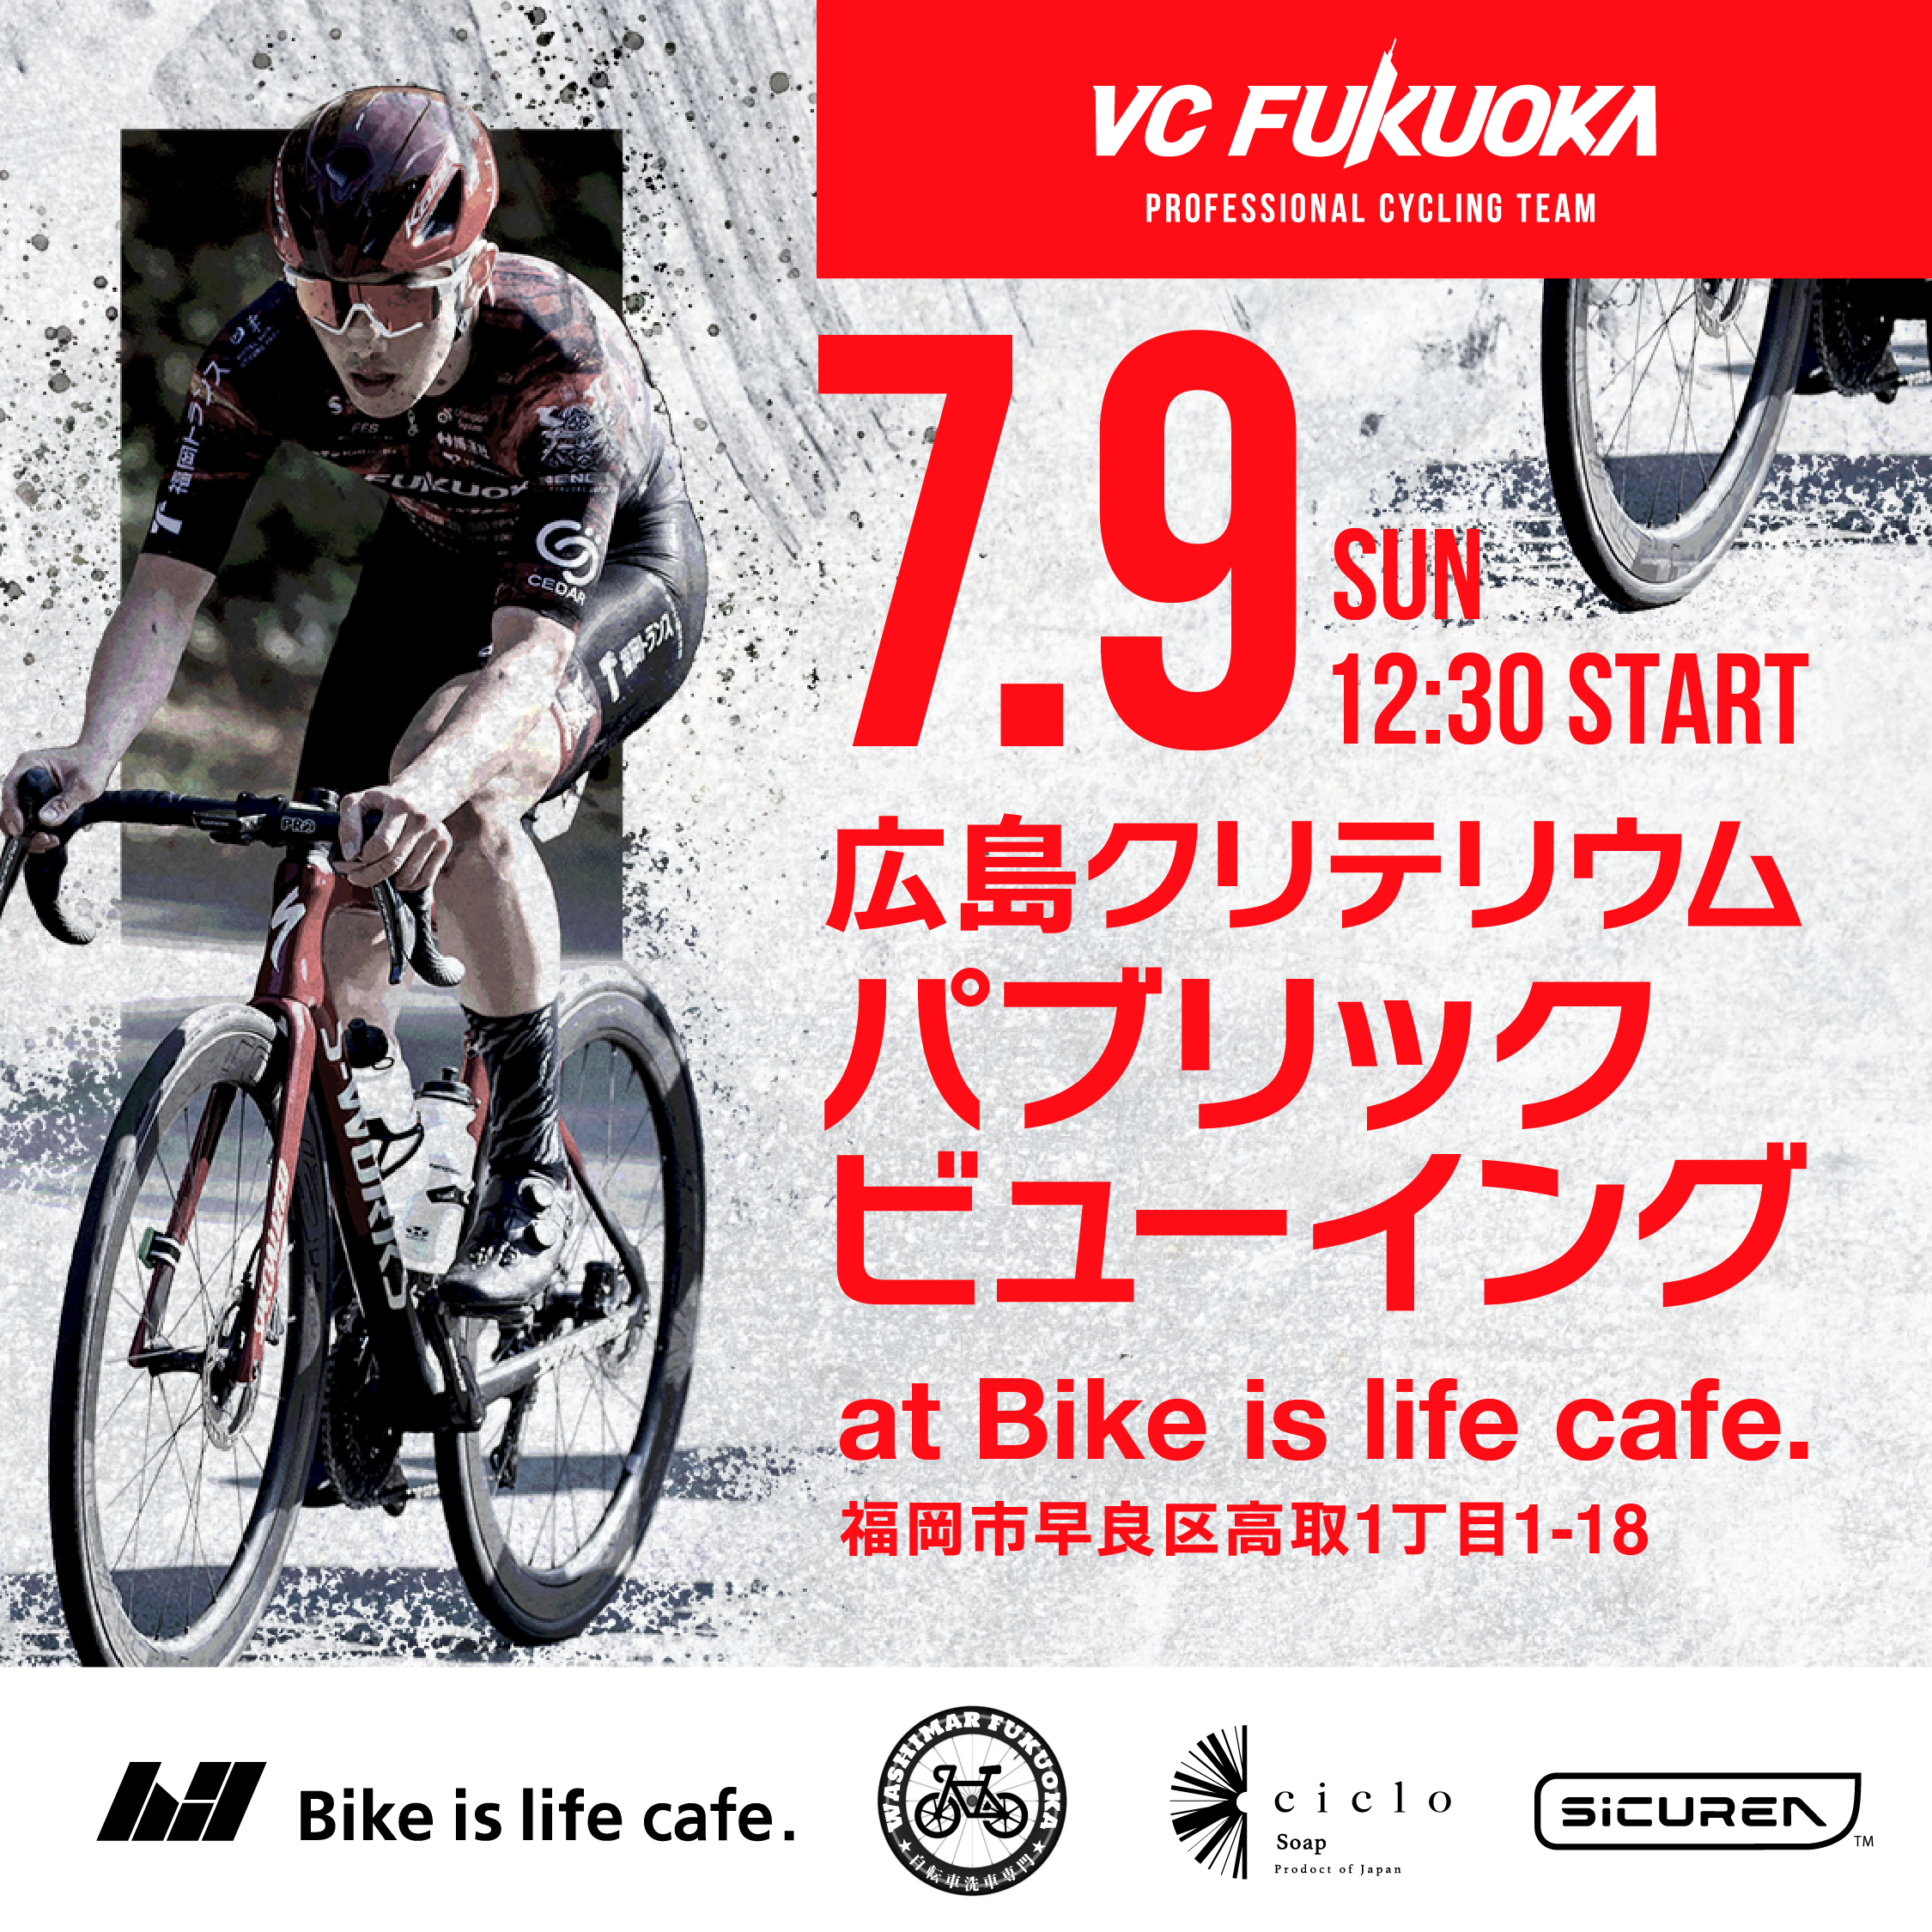 7/9 JCL広島クリテリウム観戦イベント開催 at Bike is life cafe.